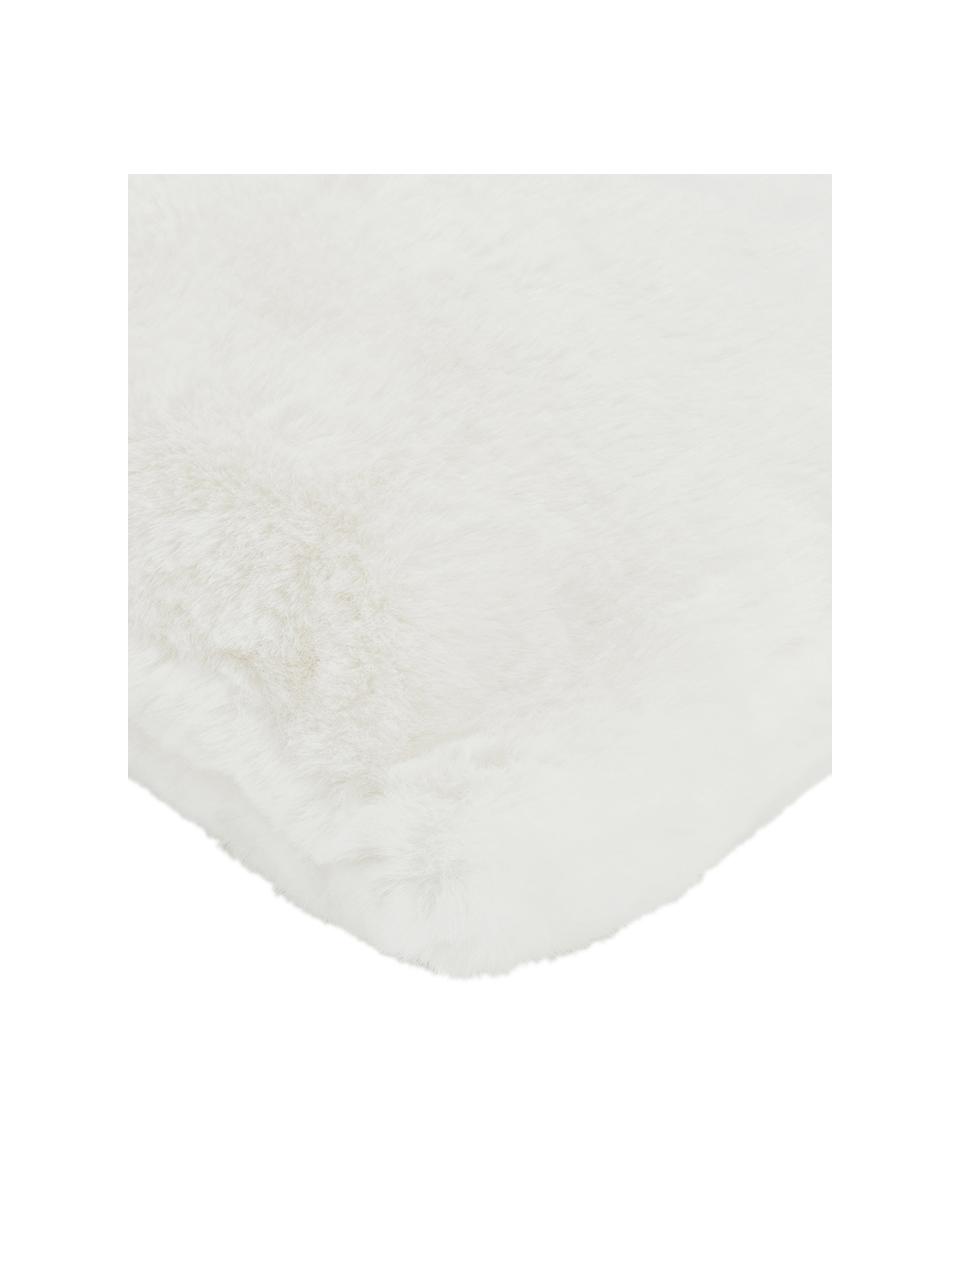 Flauschige Kunstfell-Kissenhülle Mette in Creme, glatt, Vorderseite: 100% Polyester, Rückseite: 100% Polyester, Creme, 45 x 45 cm